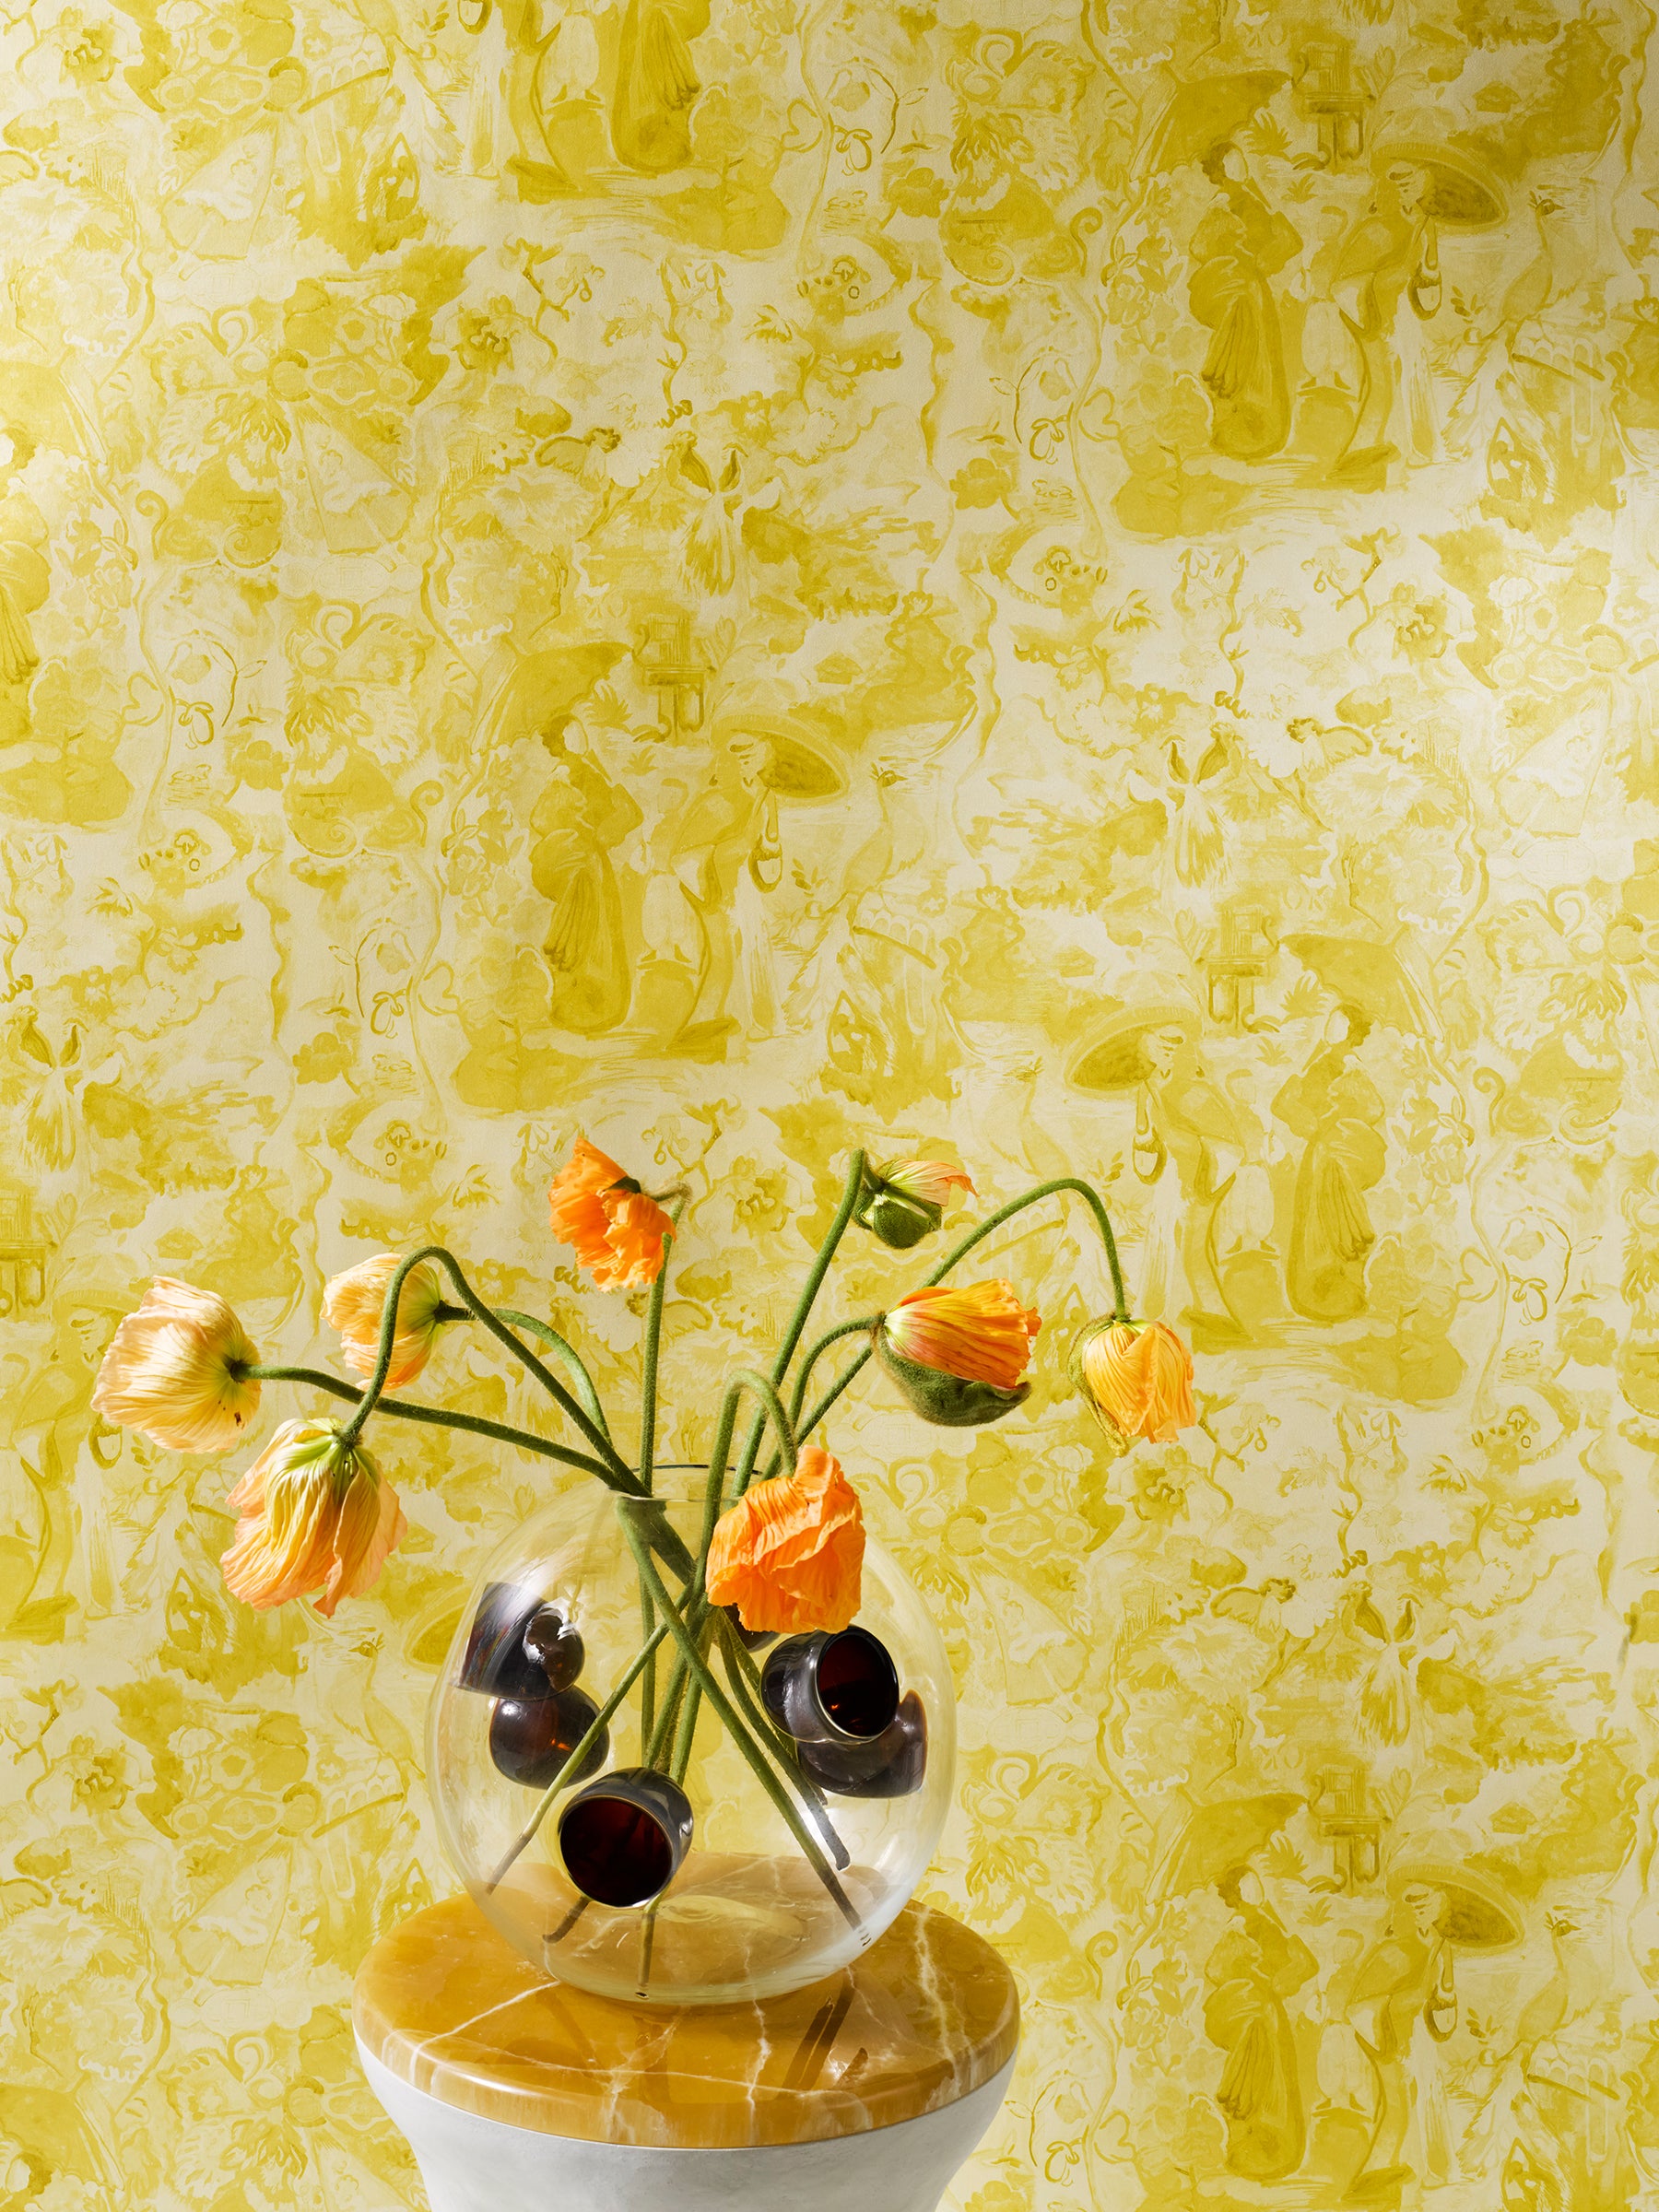 Monochrome Yellow on Metallic White Wallpaper